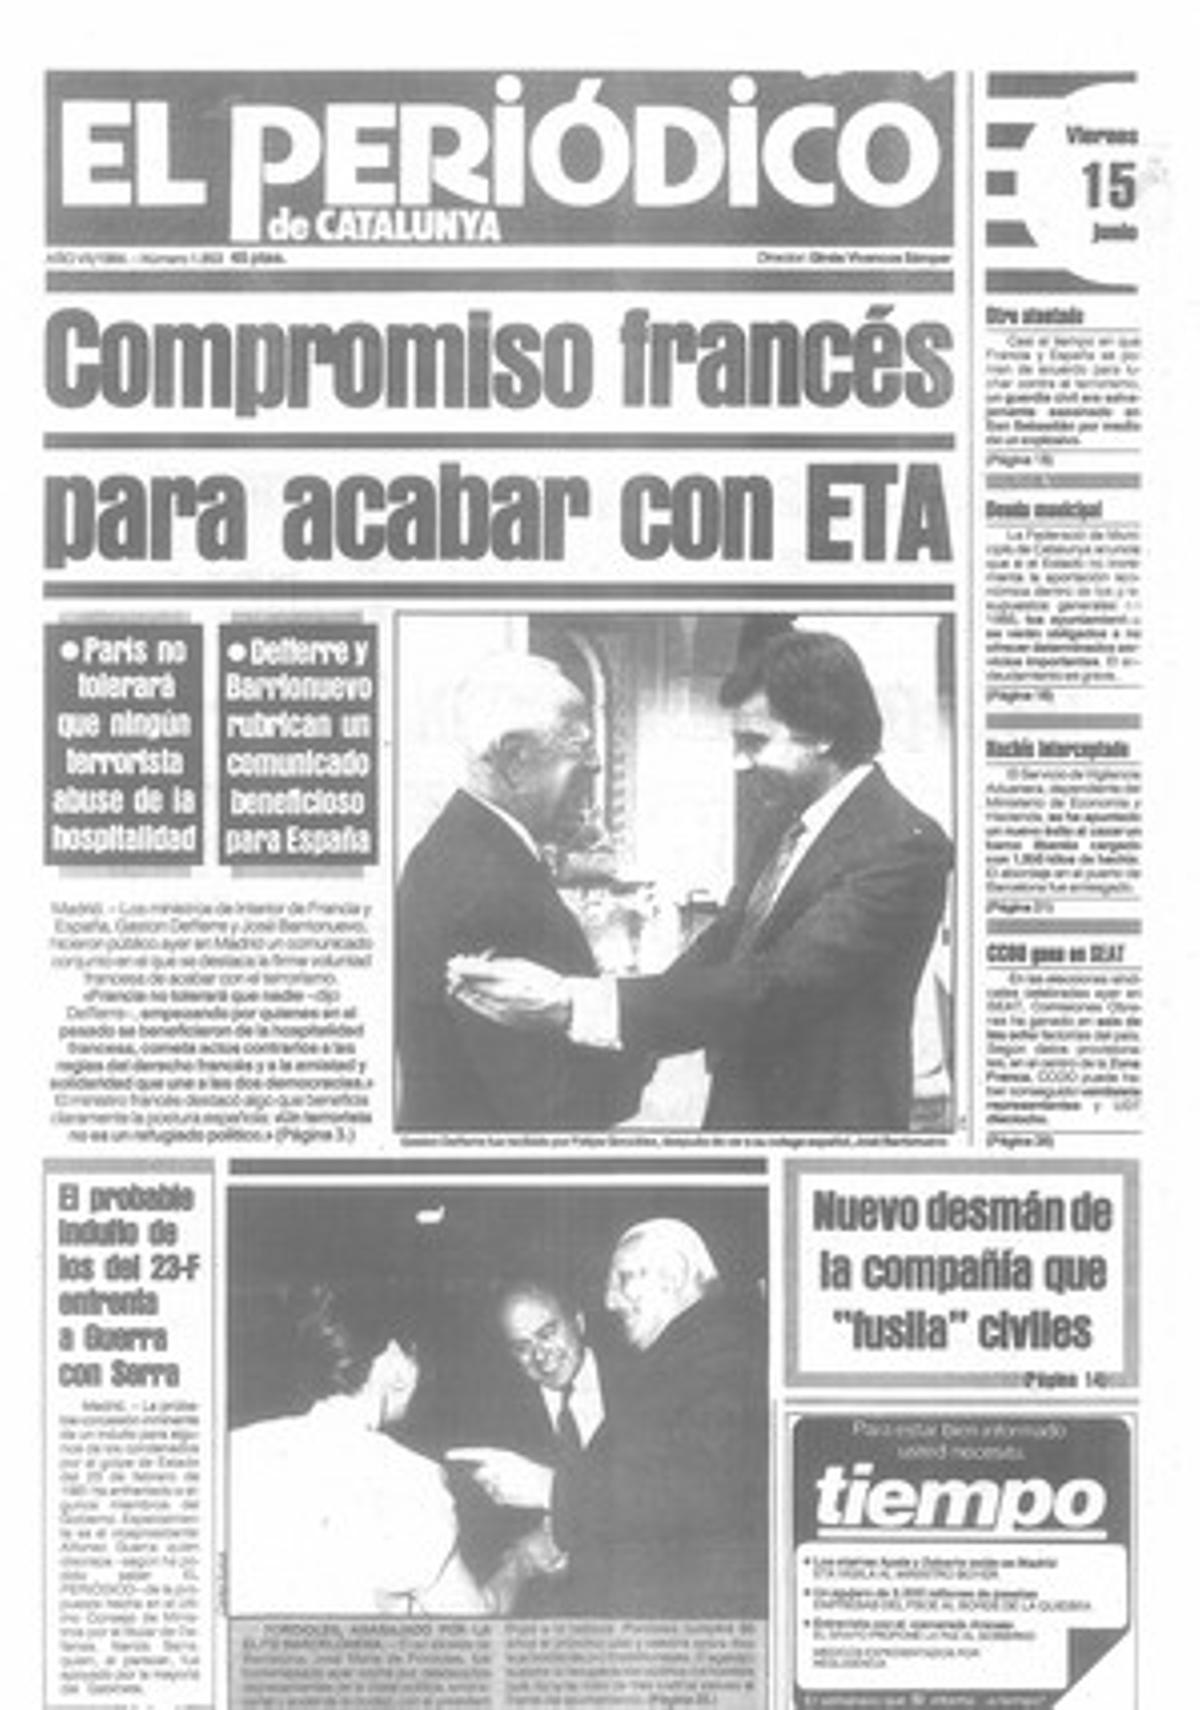 Acord entre Espanya i França per lluitar contra el terrorisme. 15/06/1984